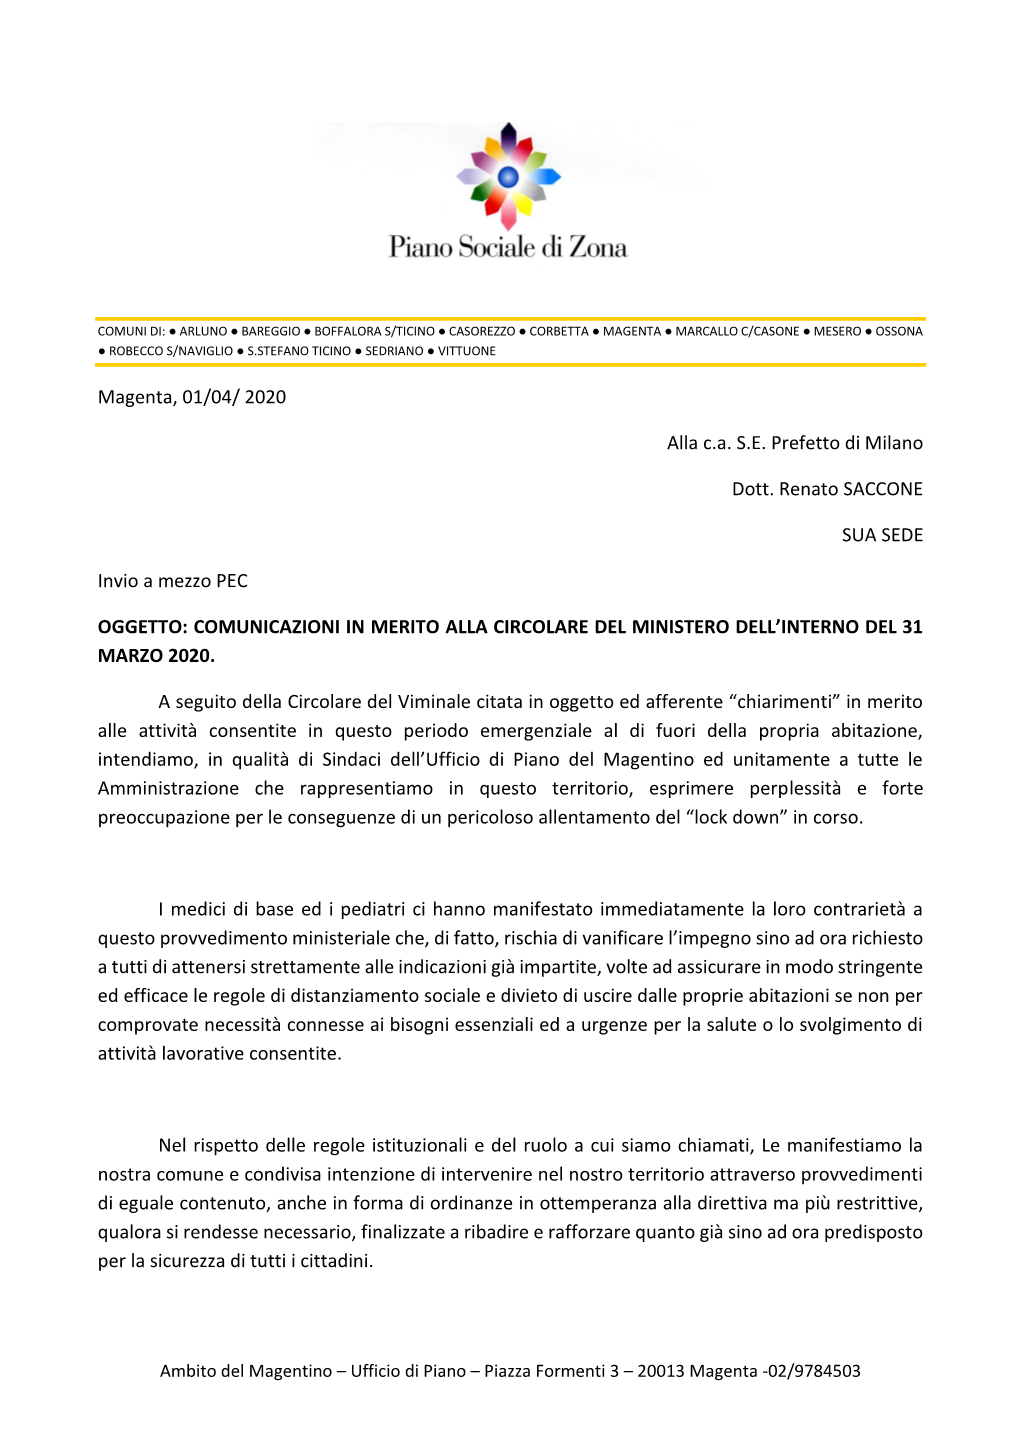 Magenta, 01/04/ 2020 Alla C.A. S.E. Prefetto Di Milano Dott. Renato